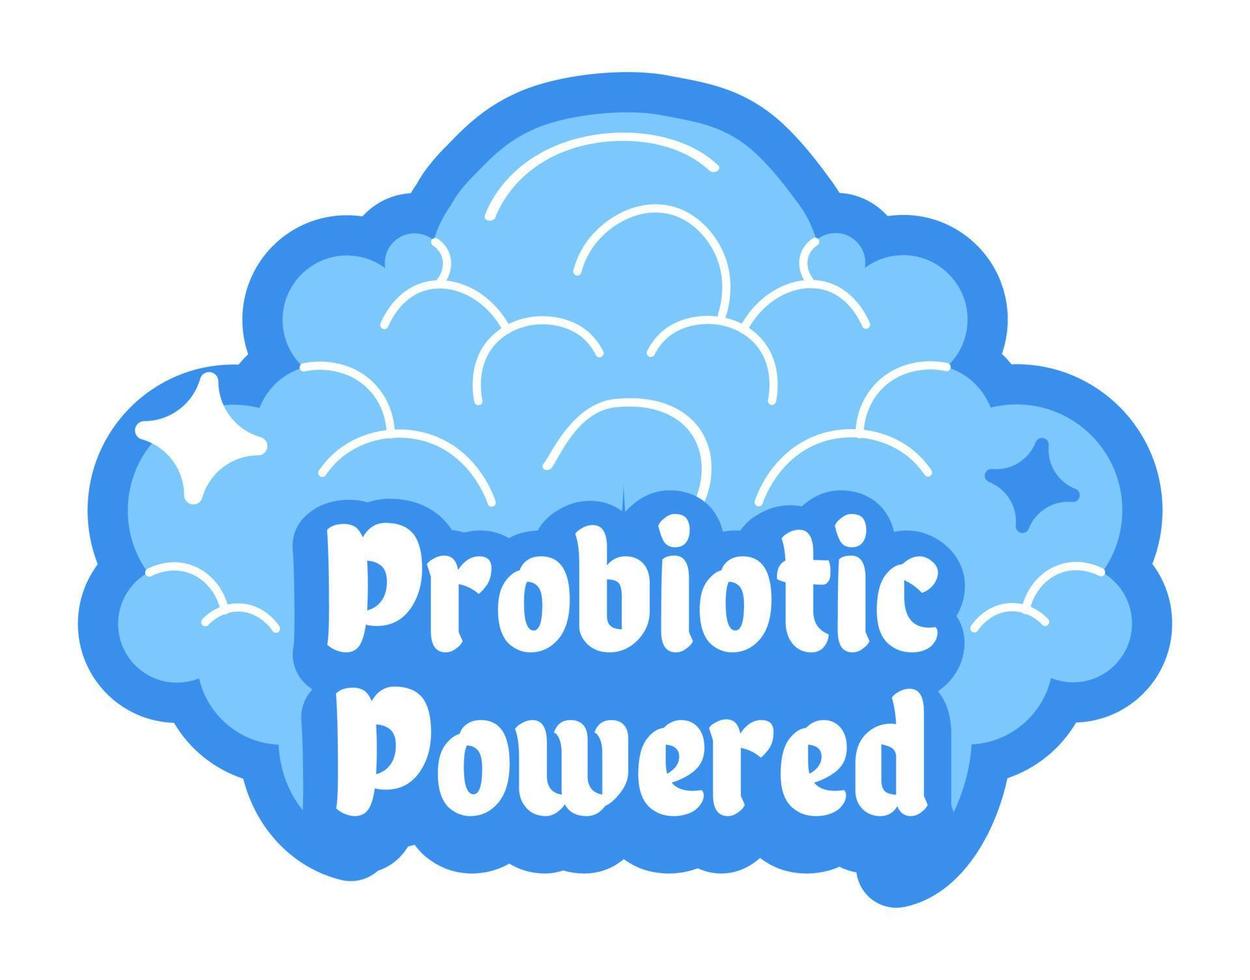 probiotisk driven rengöring, städa service vektor